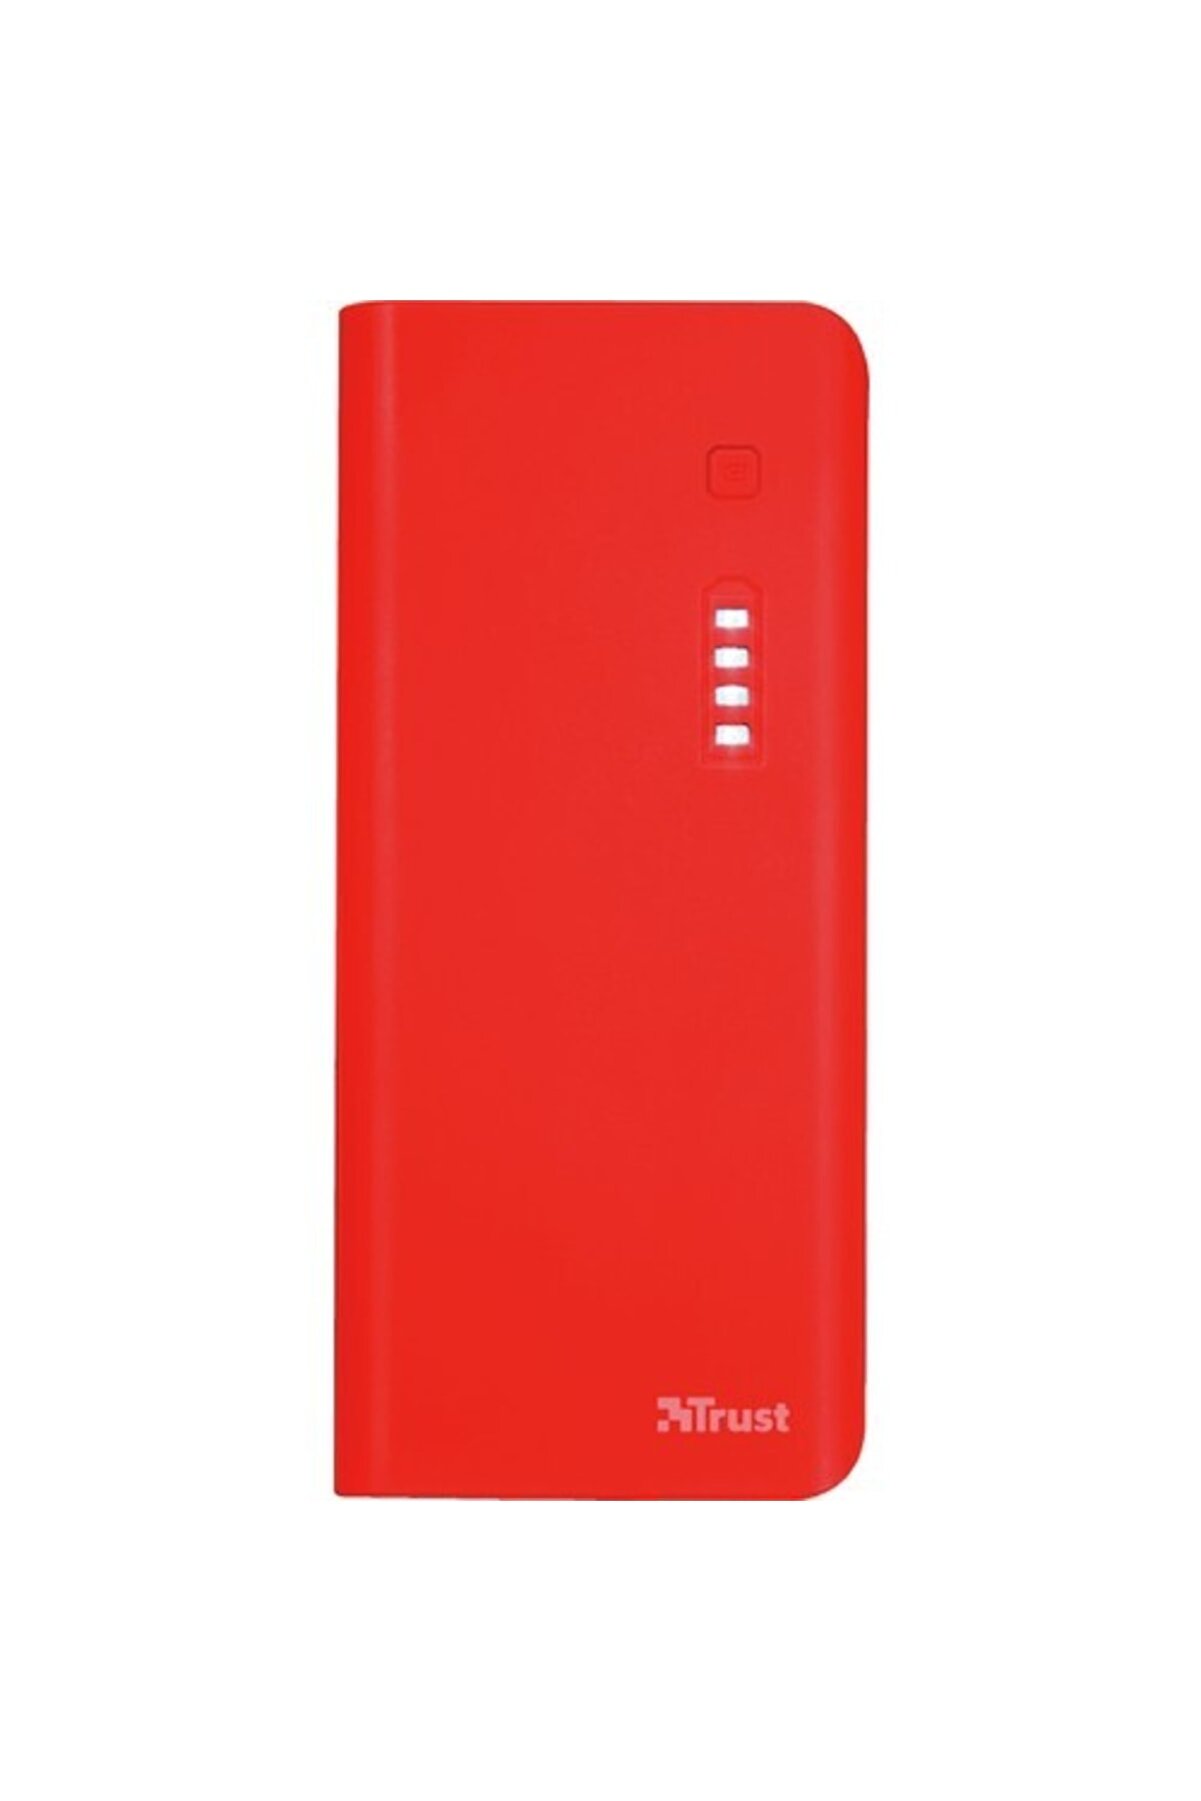 Trust Primo Çift Çıkışlı 10000 Mah Taşınabilir Şarj Cihazı Kırmızı